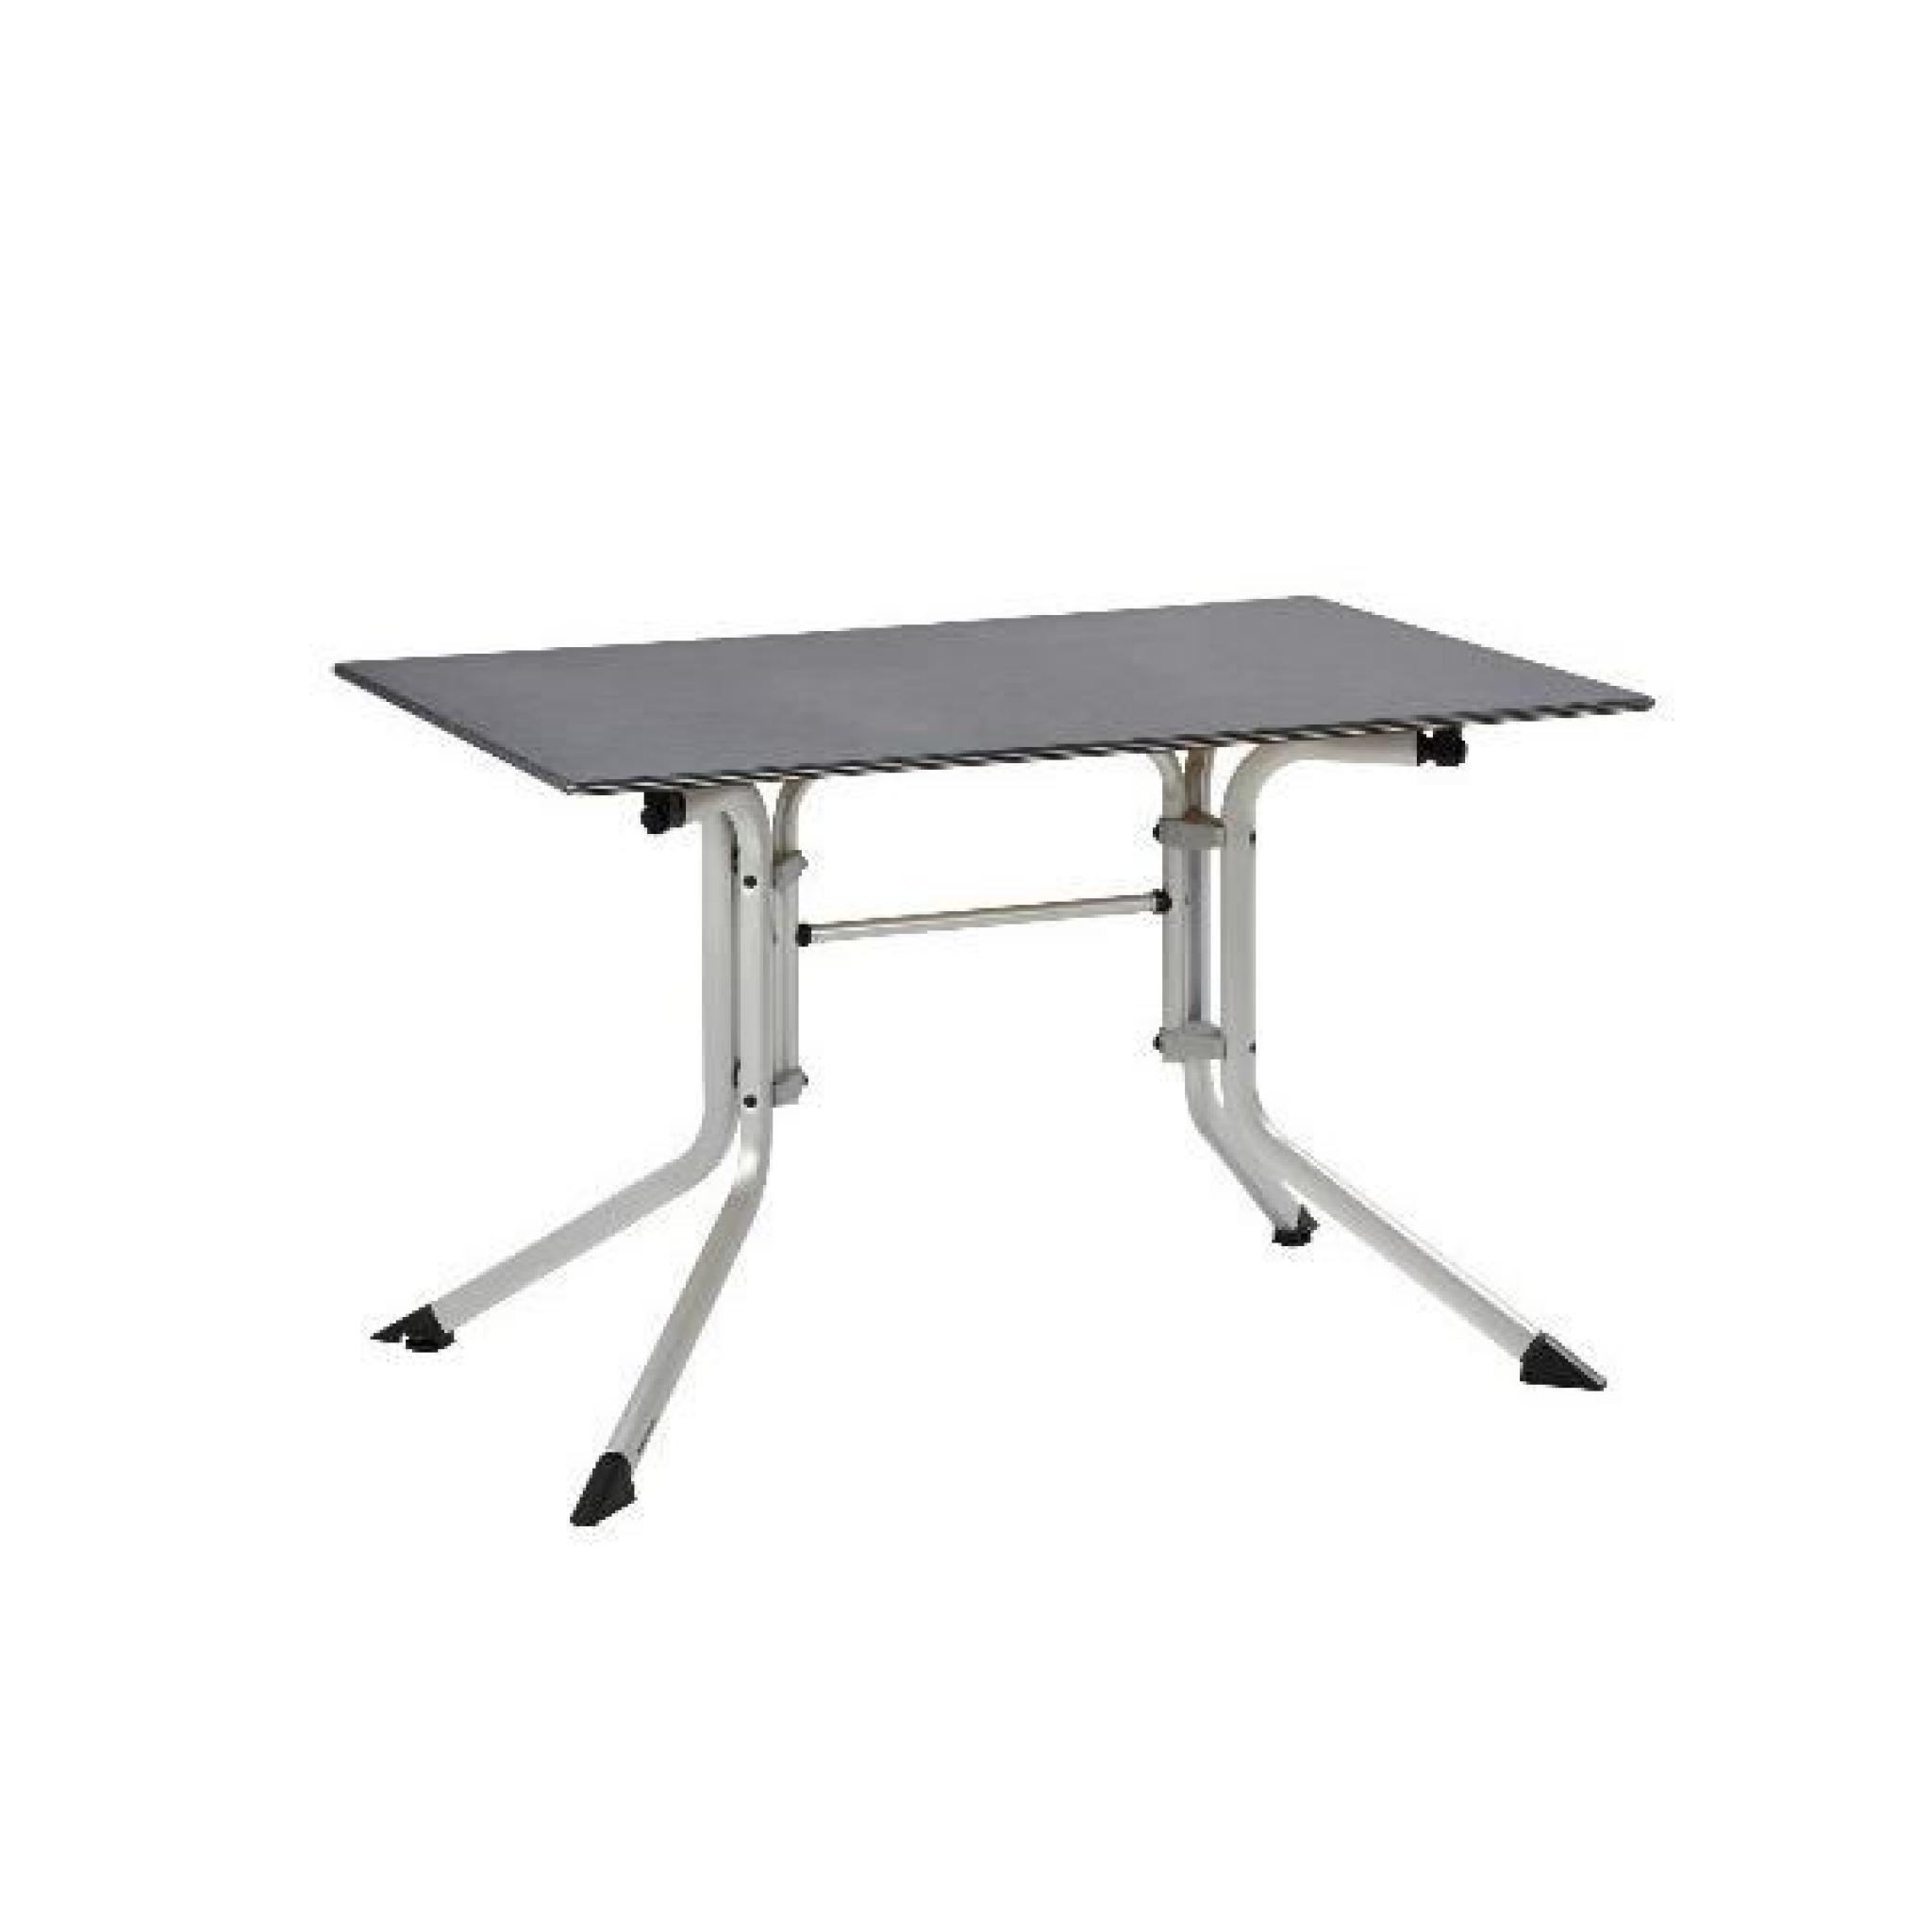 Table de jardin pliante argent/gris ADVANTAGE en aluminium - l 160 x L 95 x H 74 cm